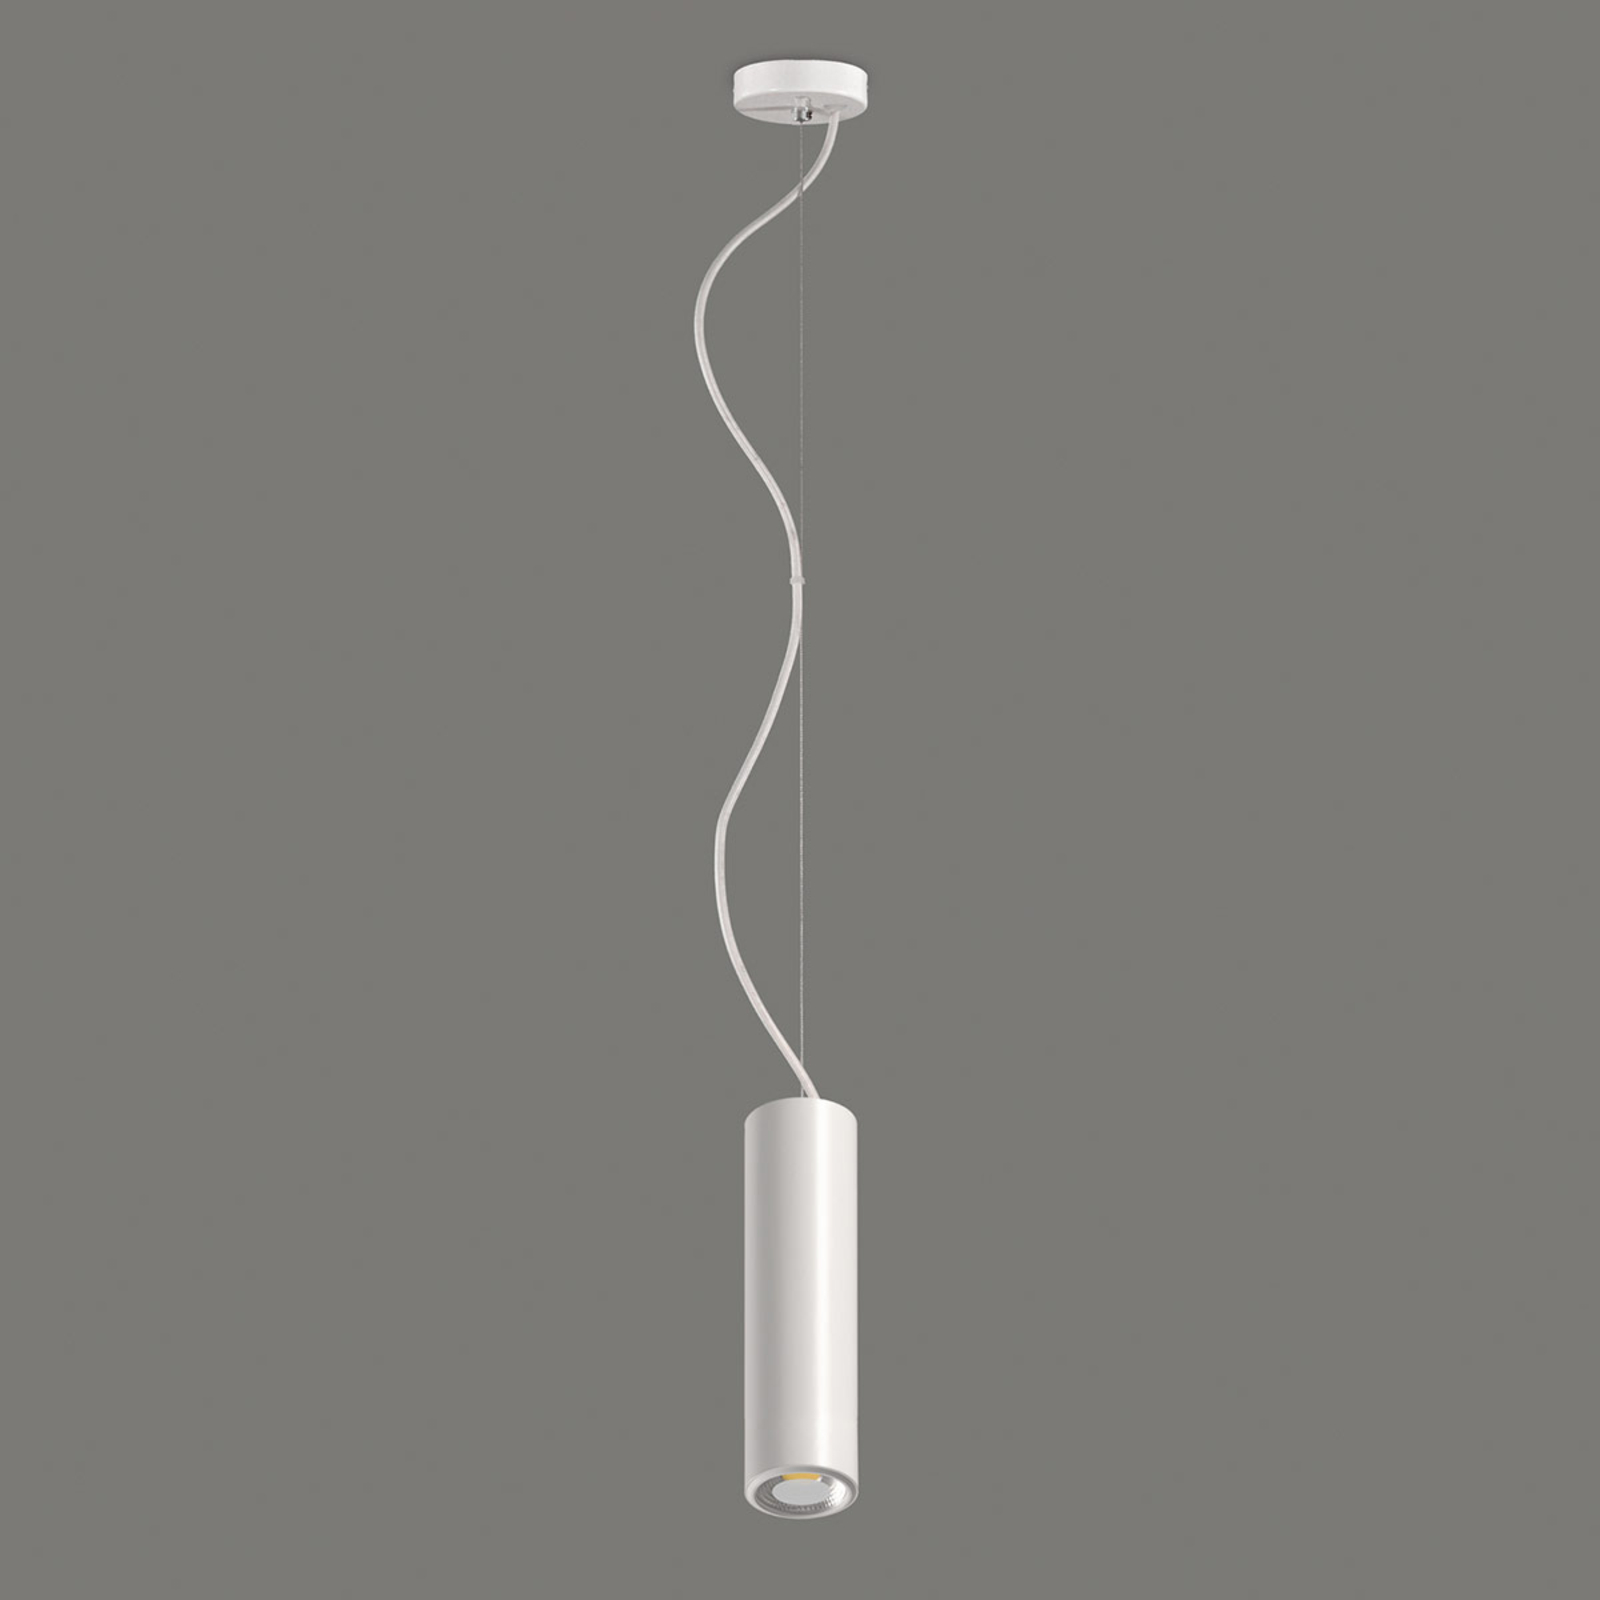 Studio - biała lampa wisząca LED w kształcie walca